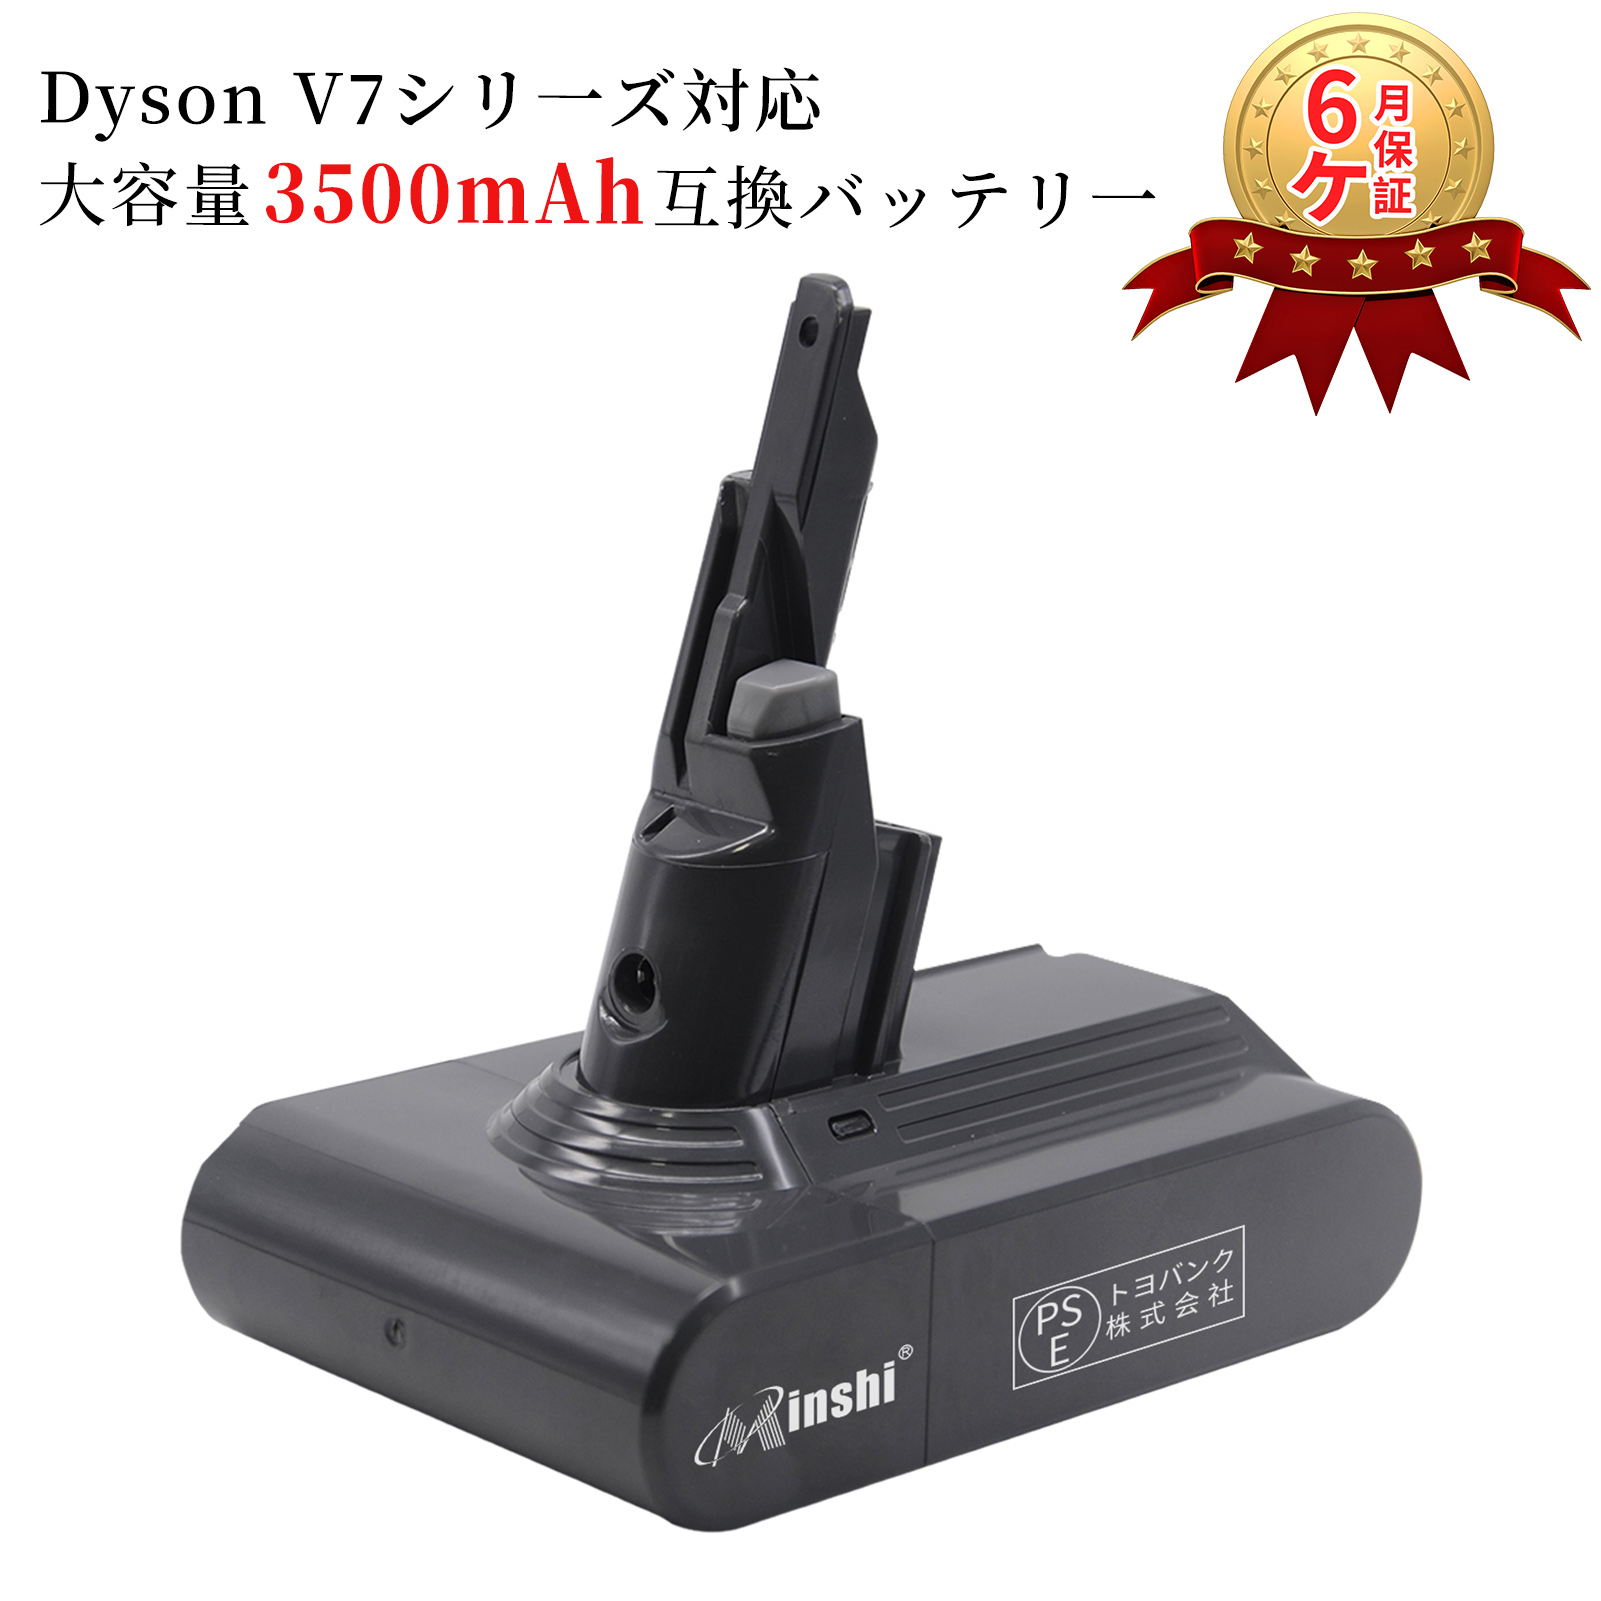 ダイソン dyson v7 sv11 互換 バッテリー Dyson V7 Animal 対応 21.6V 3.5Ah バッテリー PSE認証取得済み